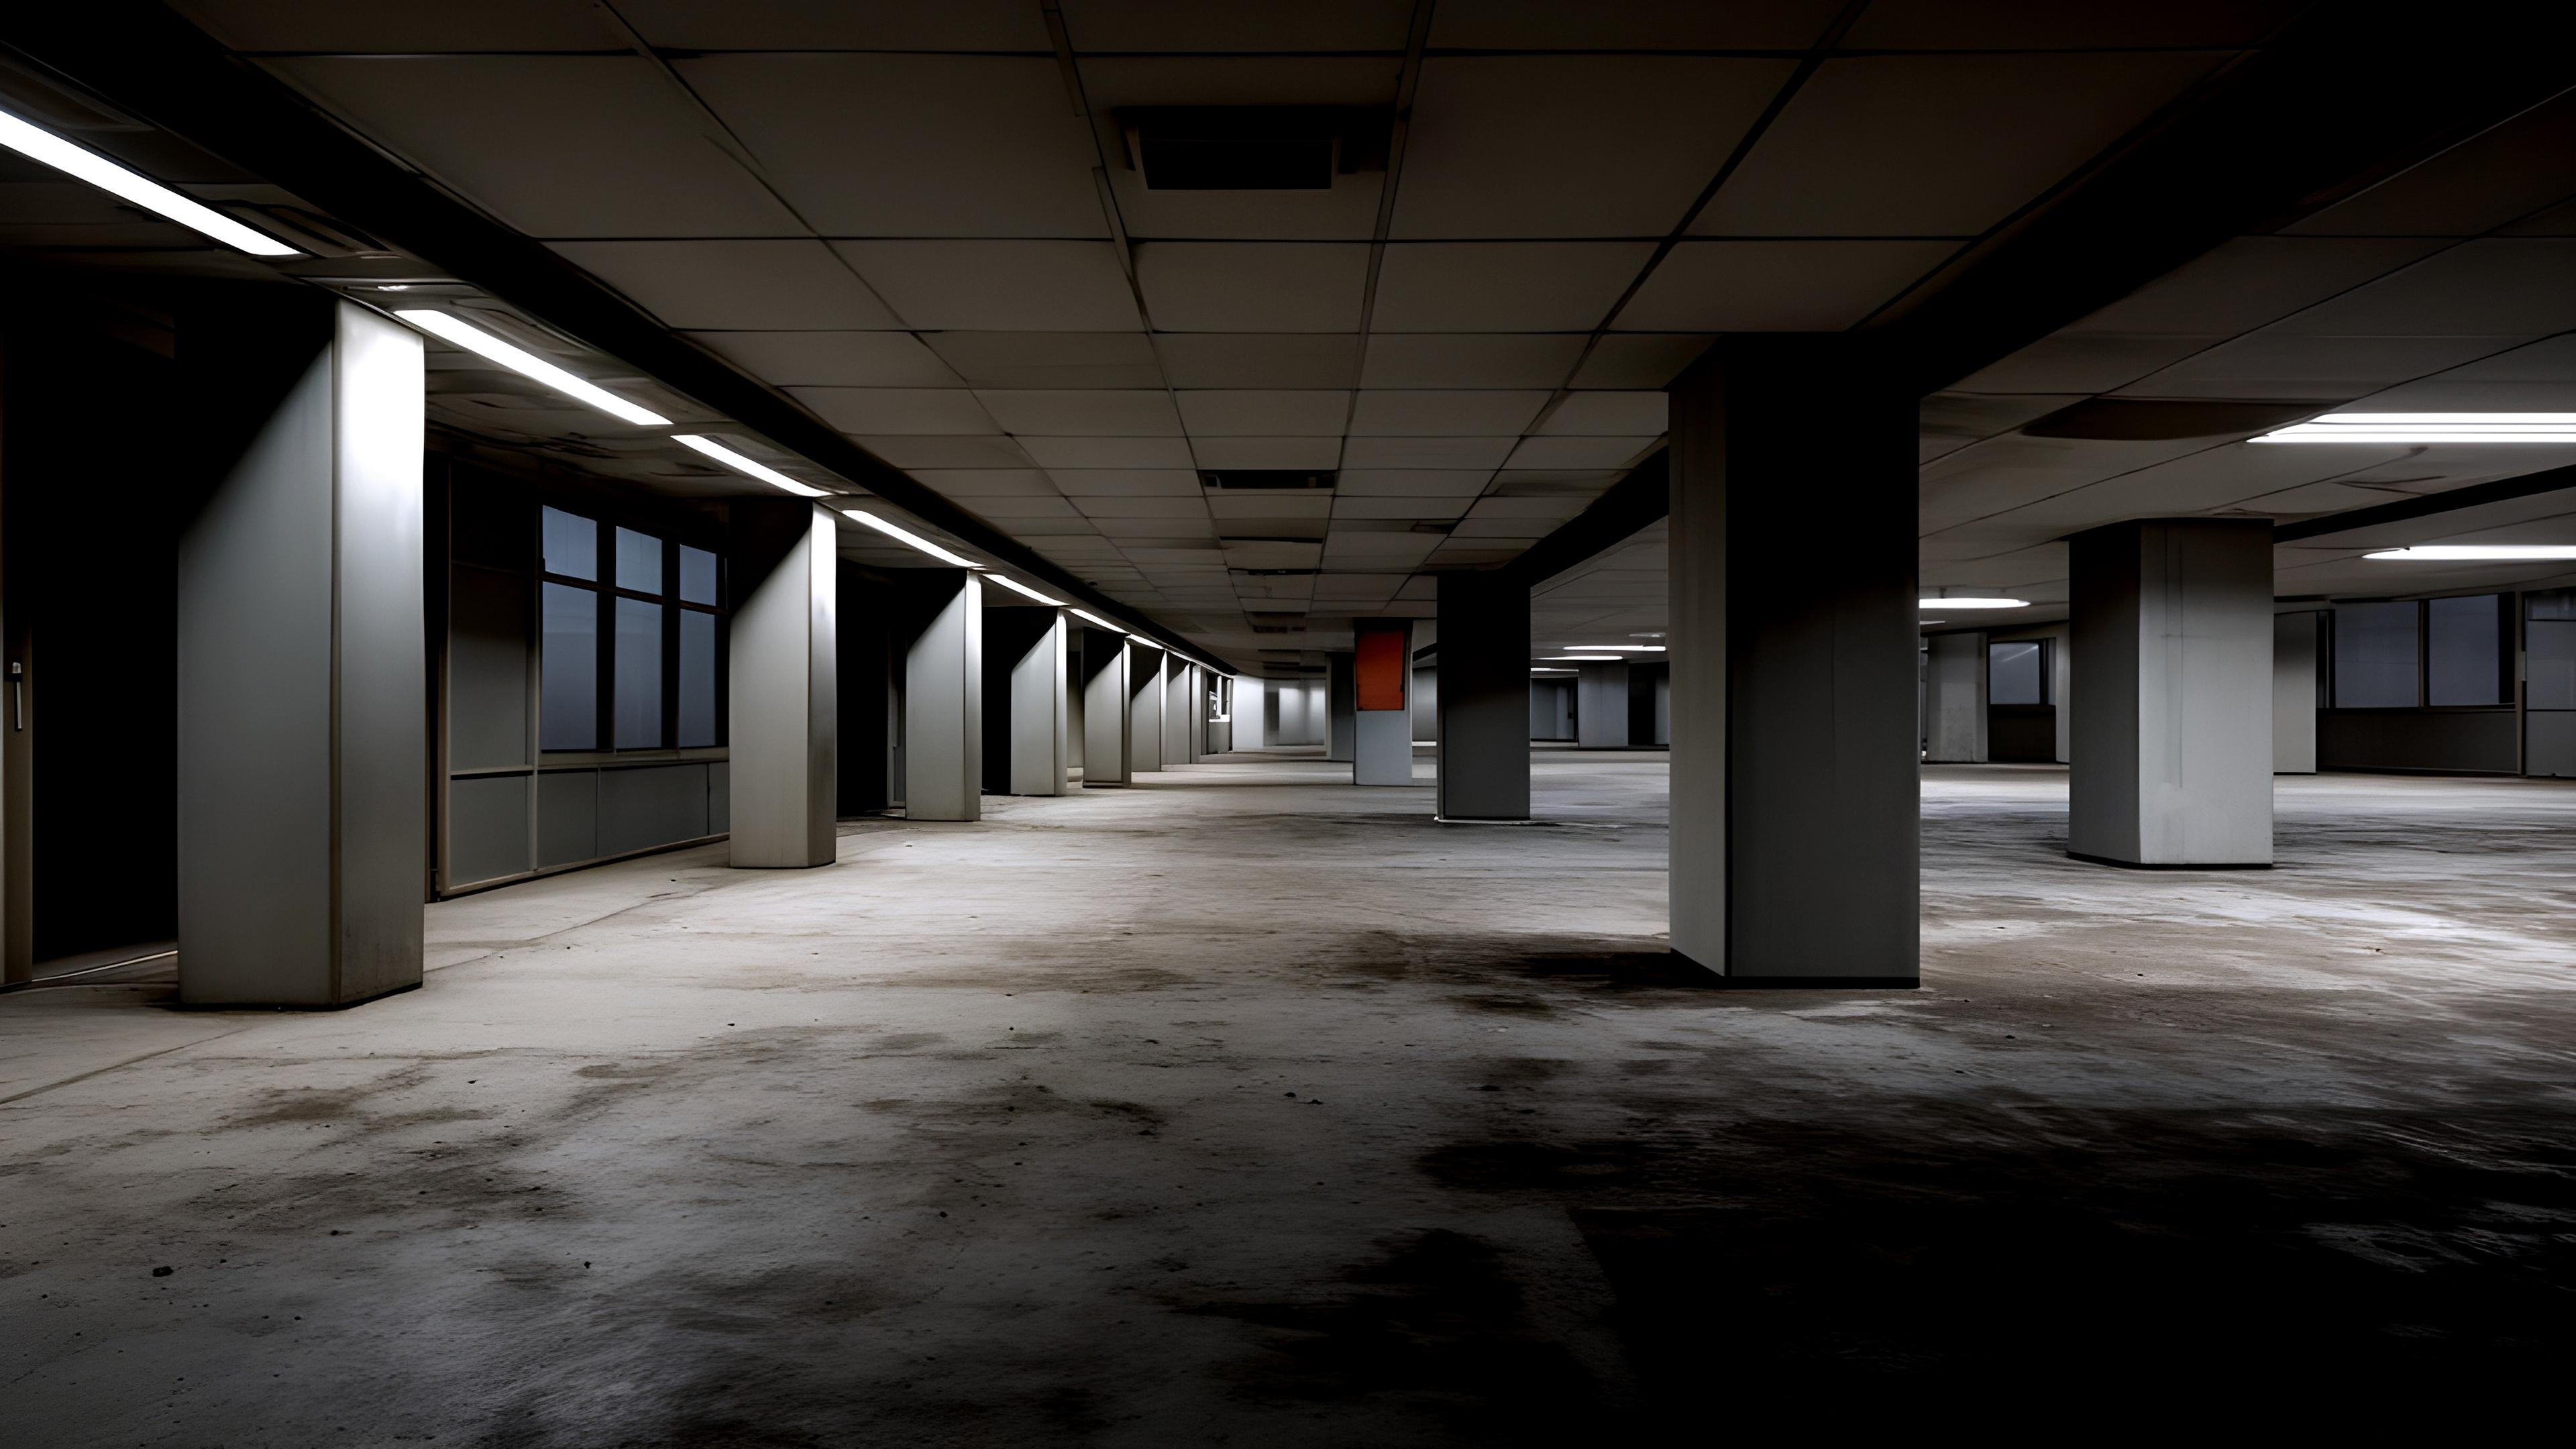 level 4 abandoned office explained #backrooms #abandonedoffice #explai